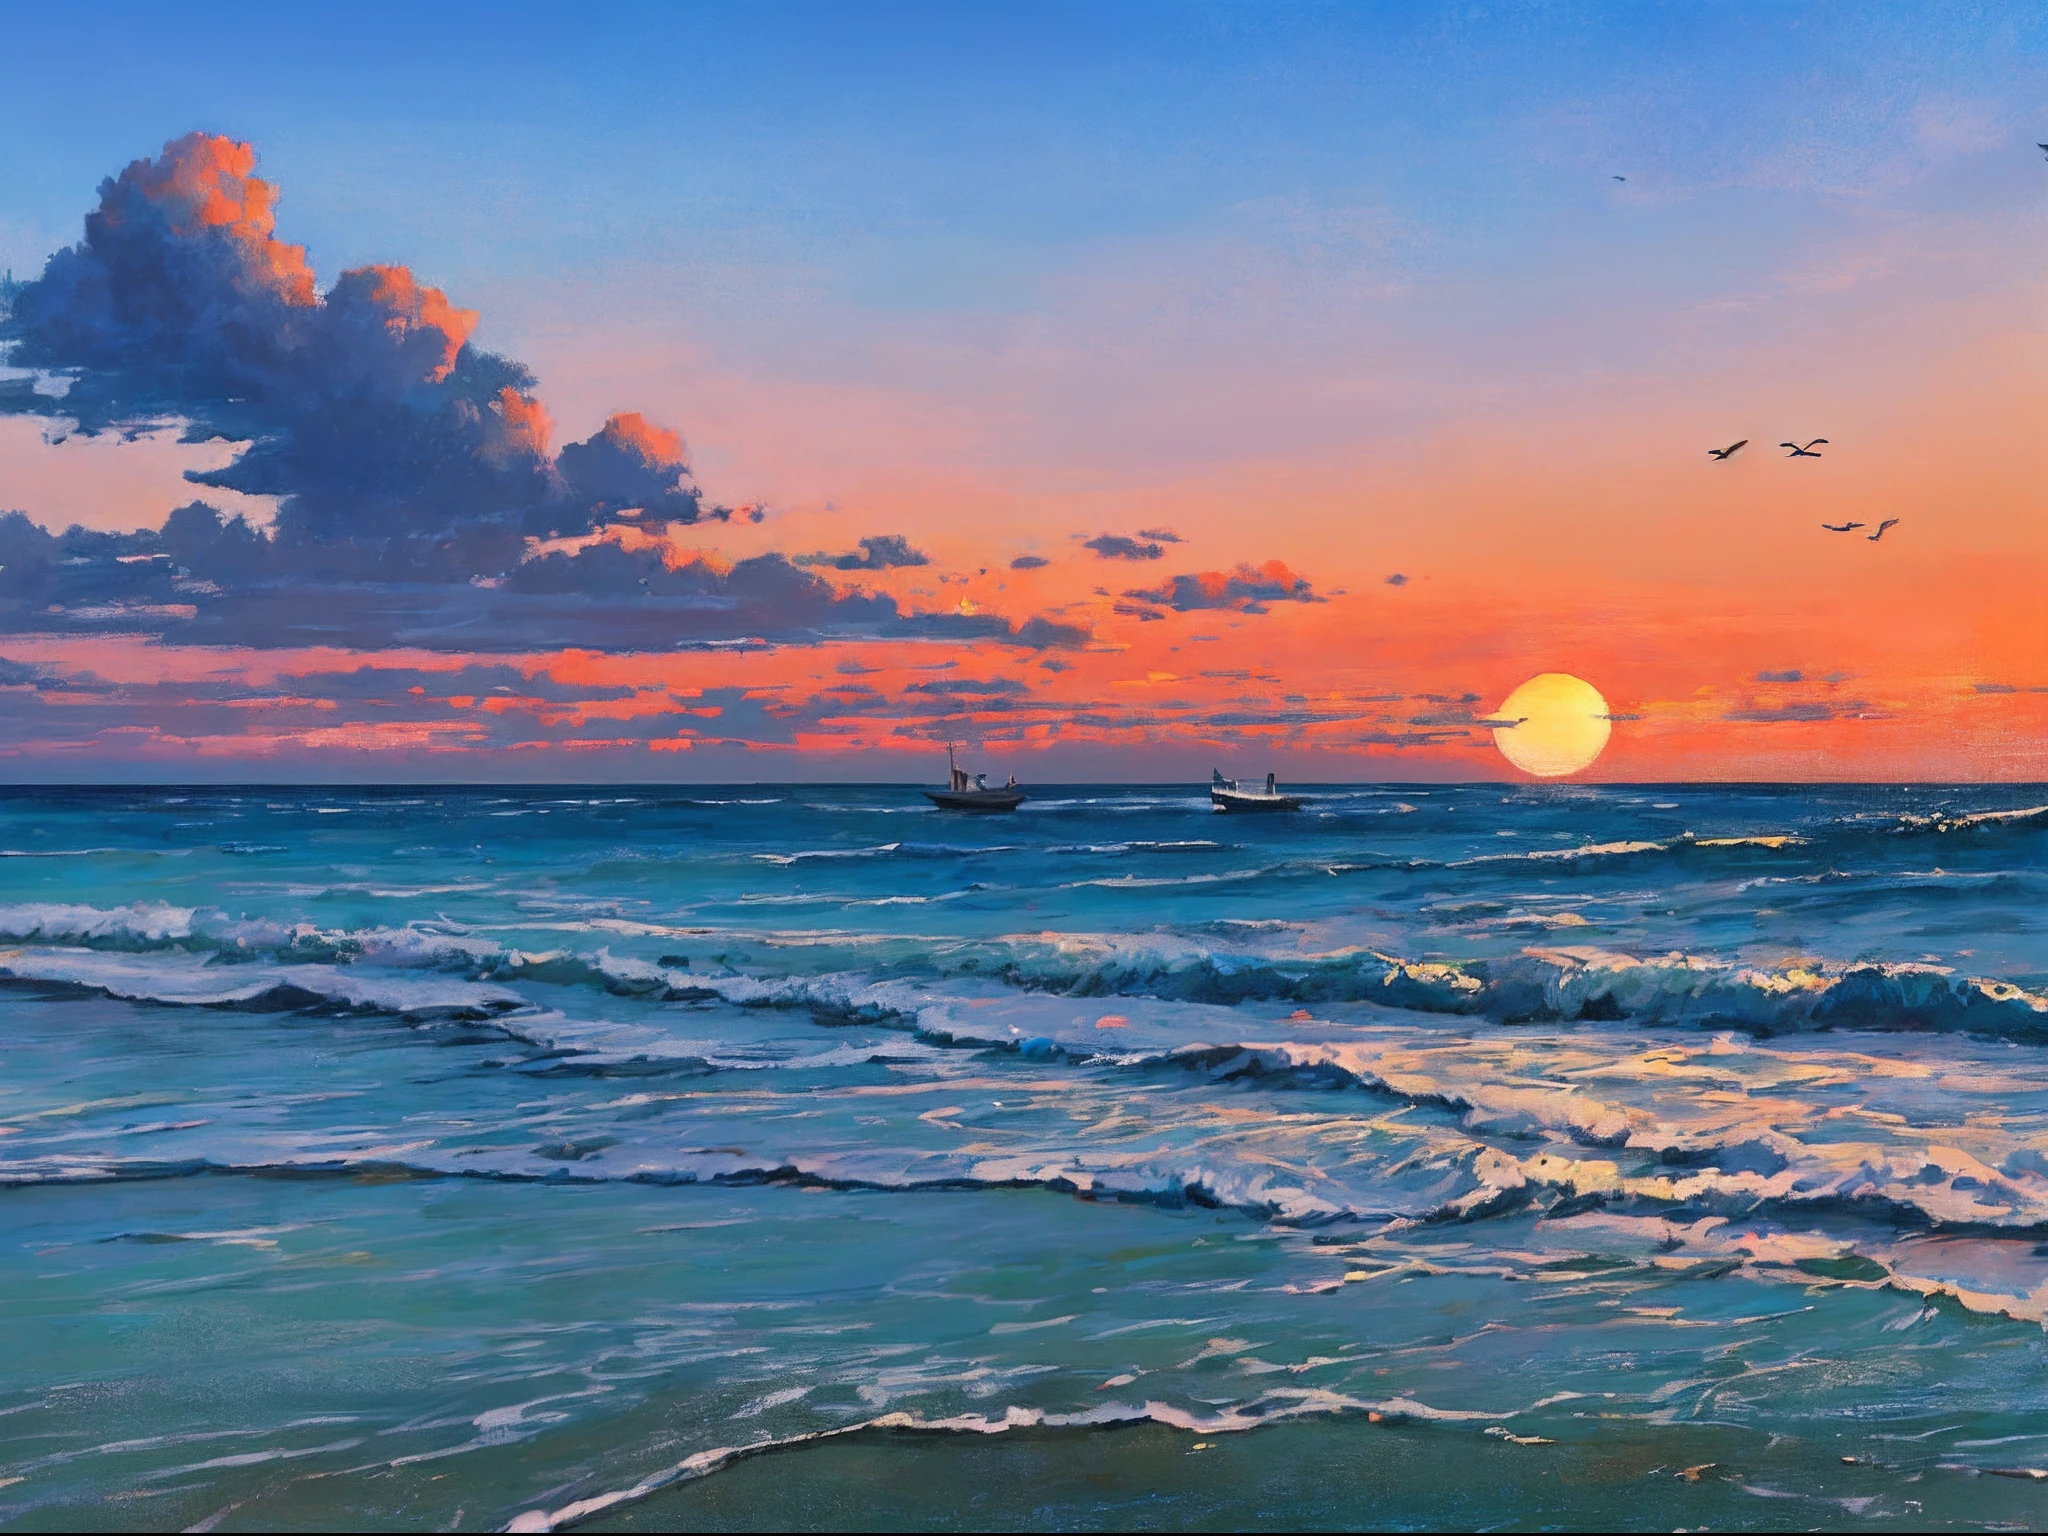 "令人惊叹的海滩风景油画，以宁静的日出为特色, 溫柔的波浪, 远处的一艘船, 风景如画的了望塔, 雲, 以及天空翱翔的鸟儿优美的剪影."